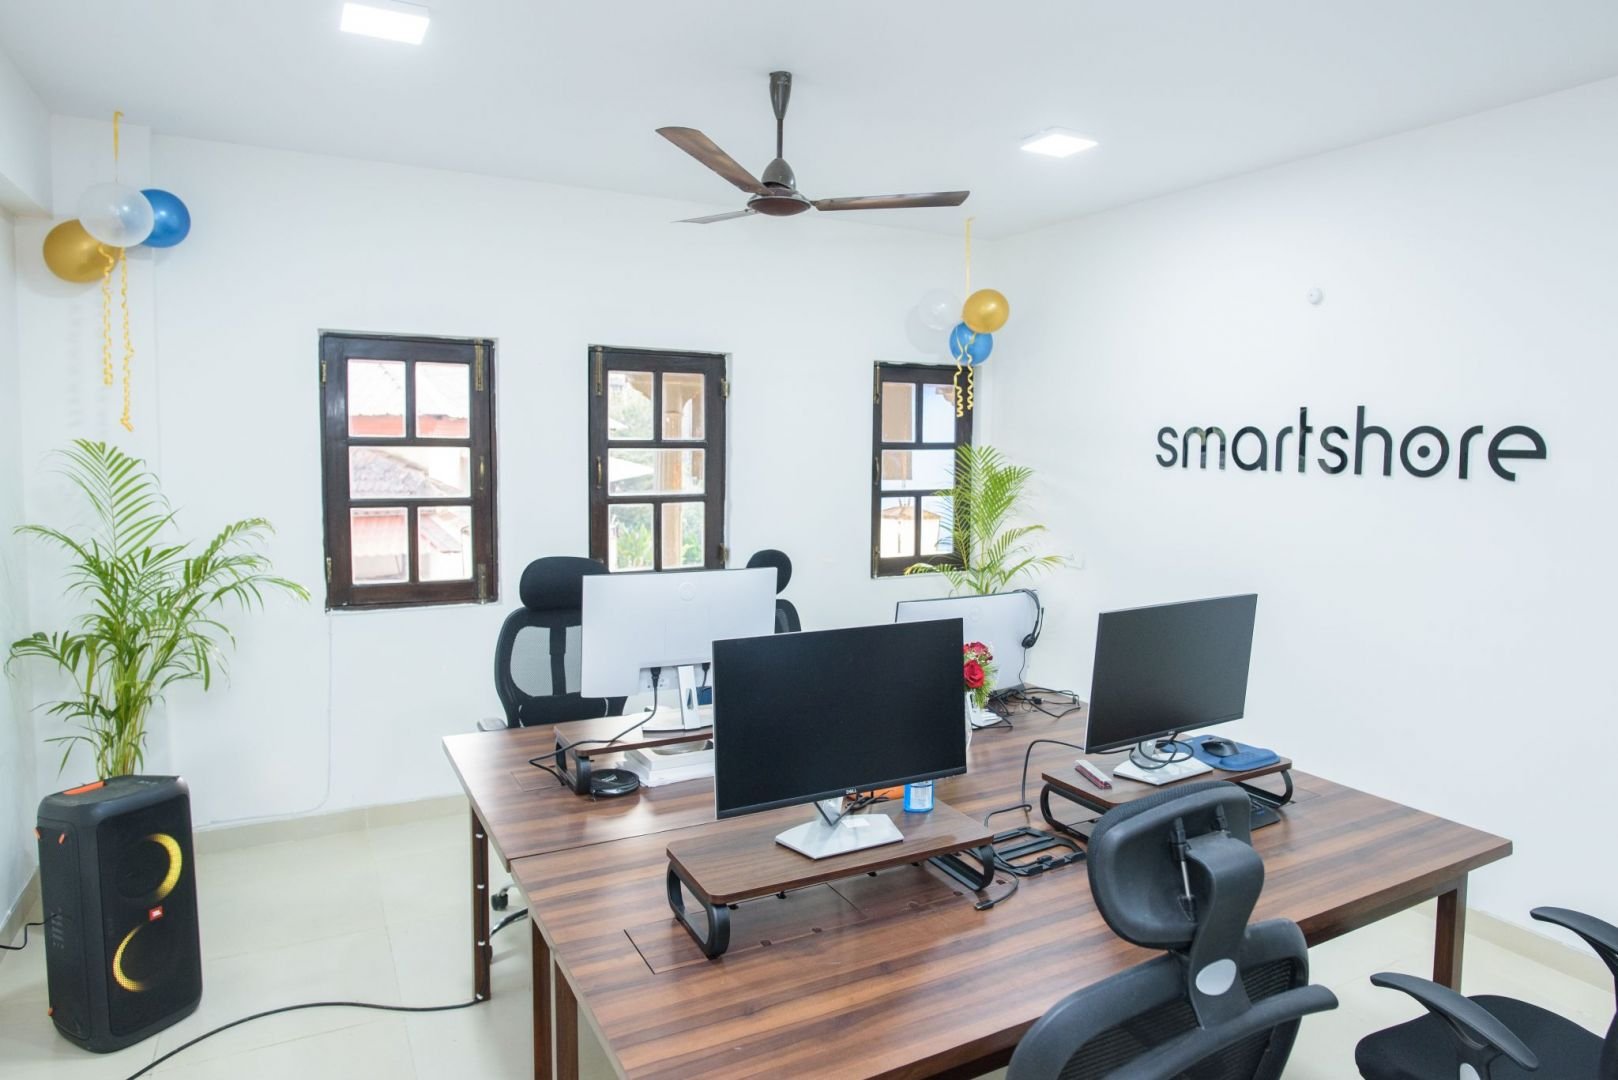 Smartshore opening office Goa